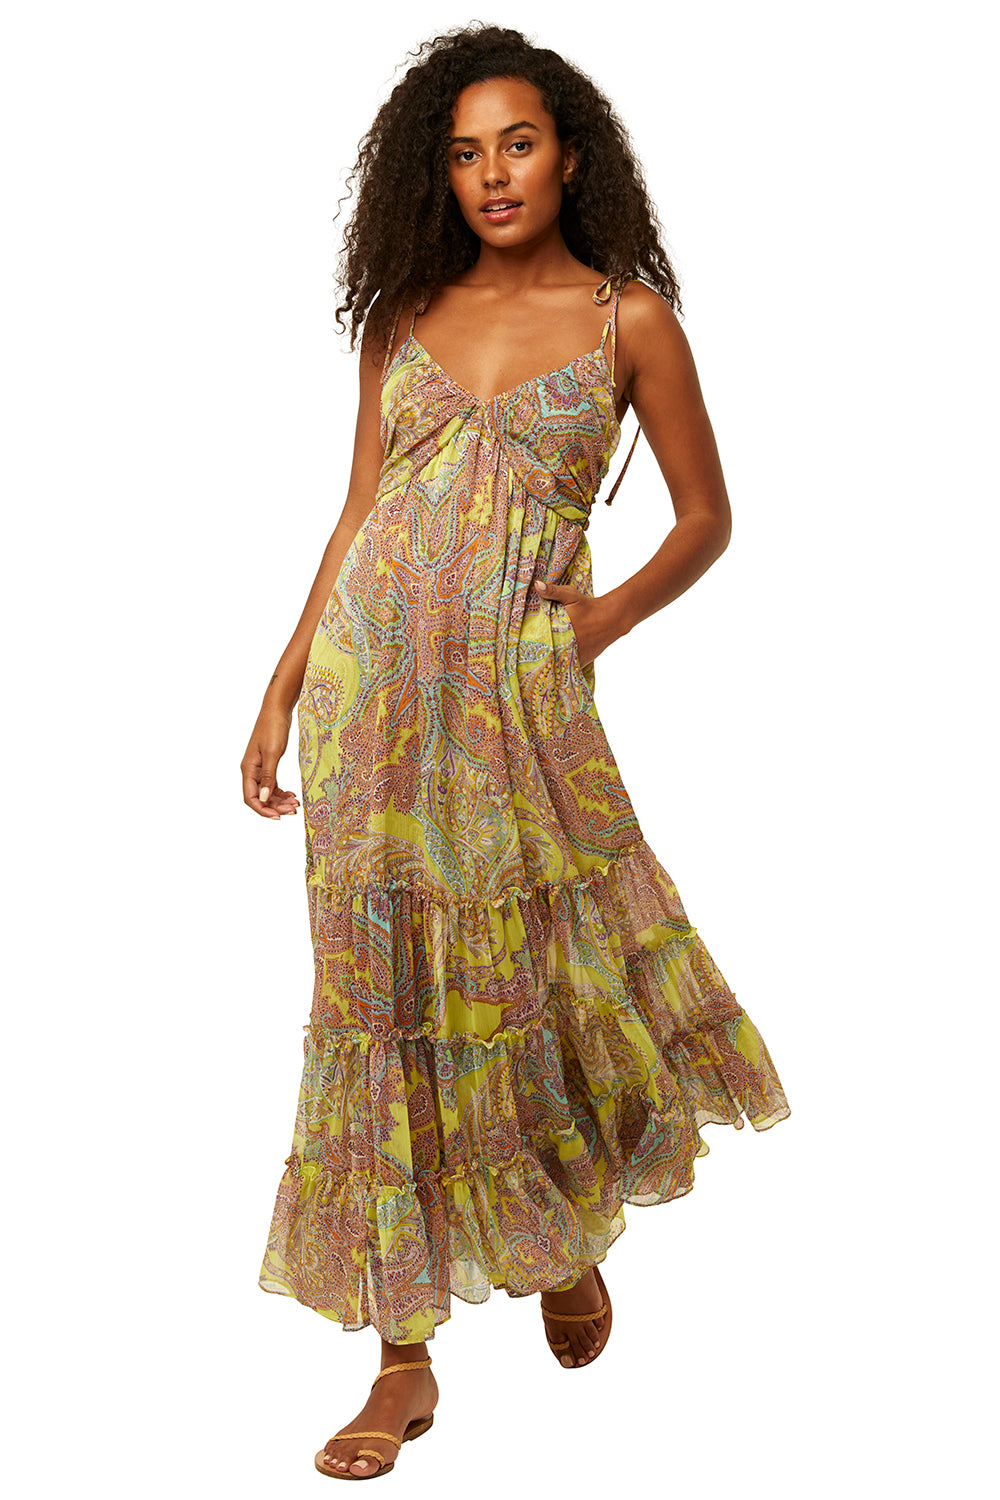 Misa - Fallon Dress in Ischia Neon Paisley